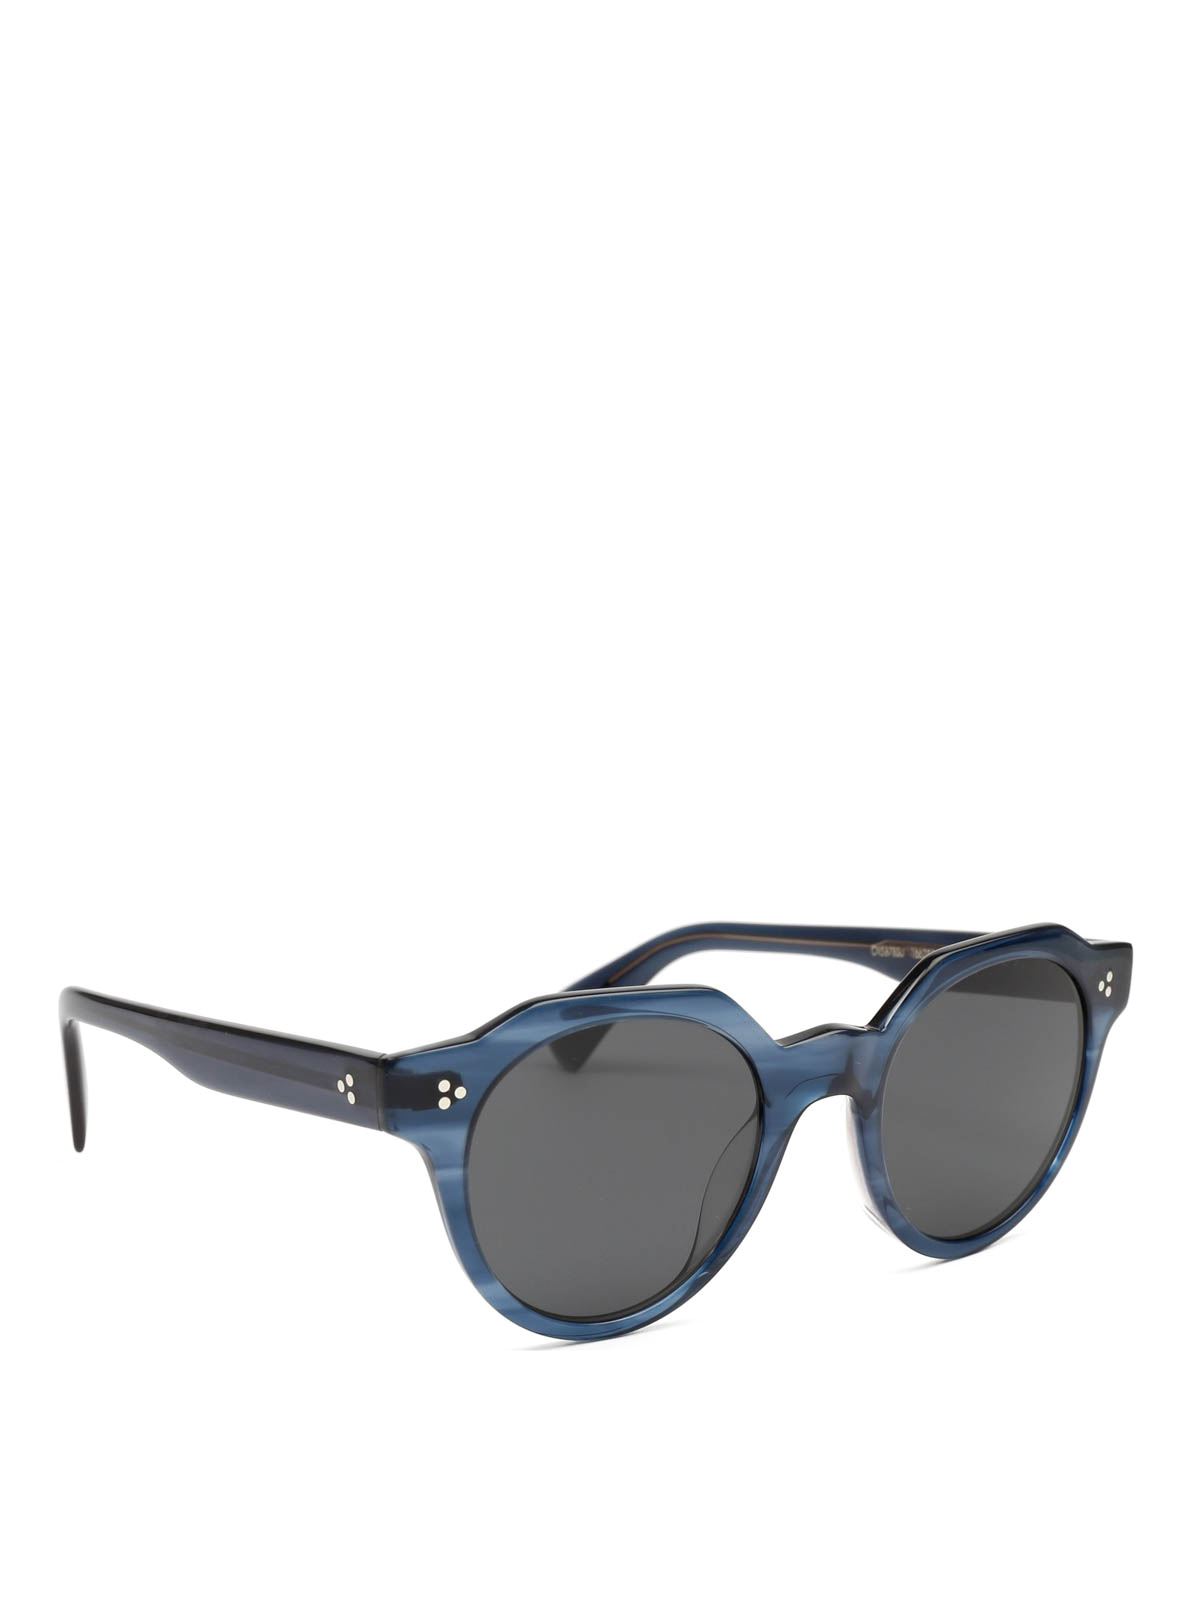 Sunglasses Oliver Peoples - Irven glasses - OV5378SU166287 